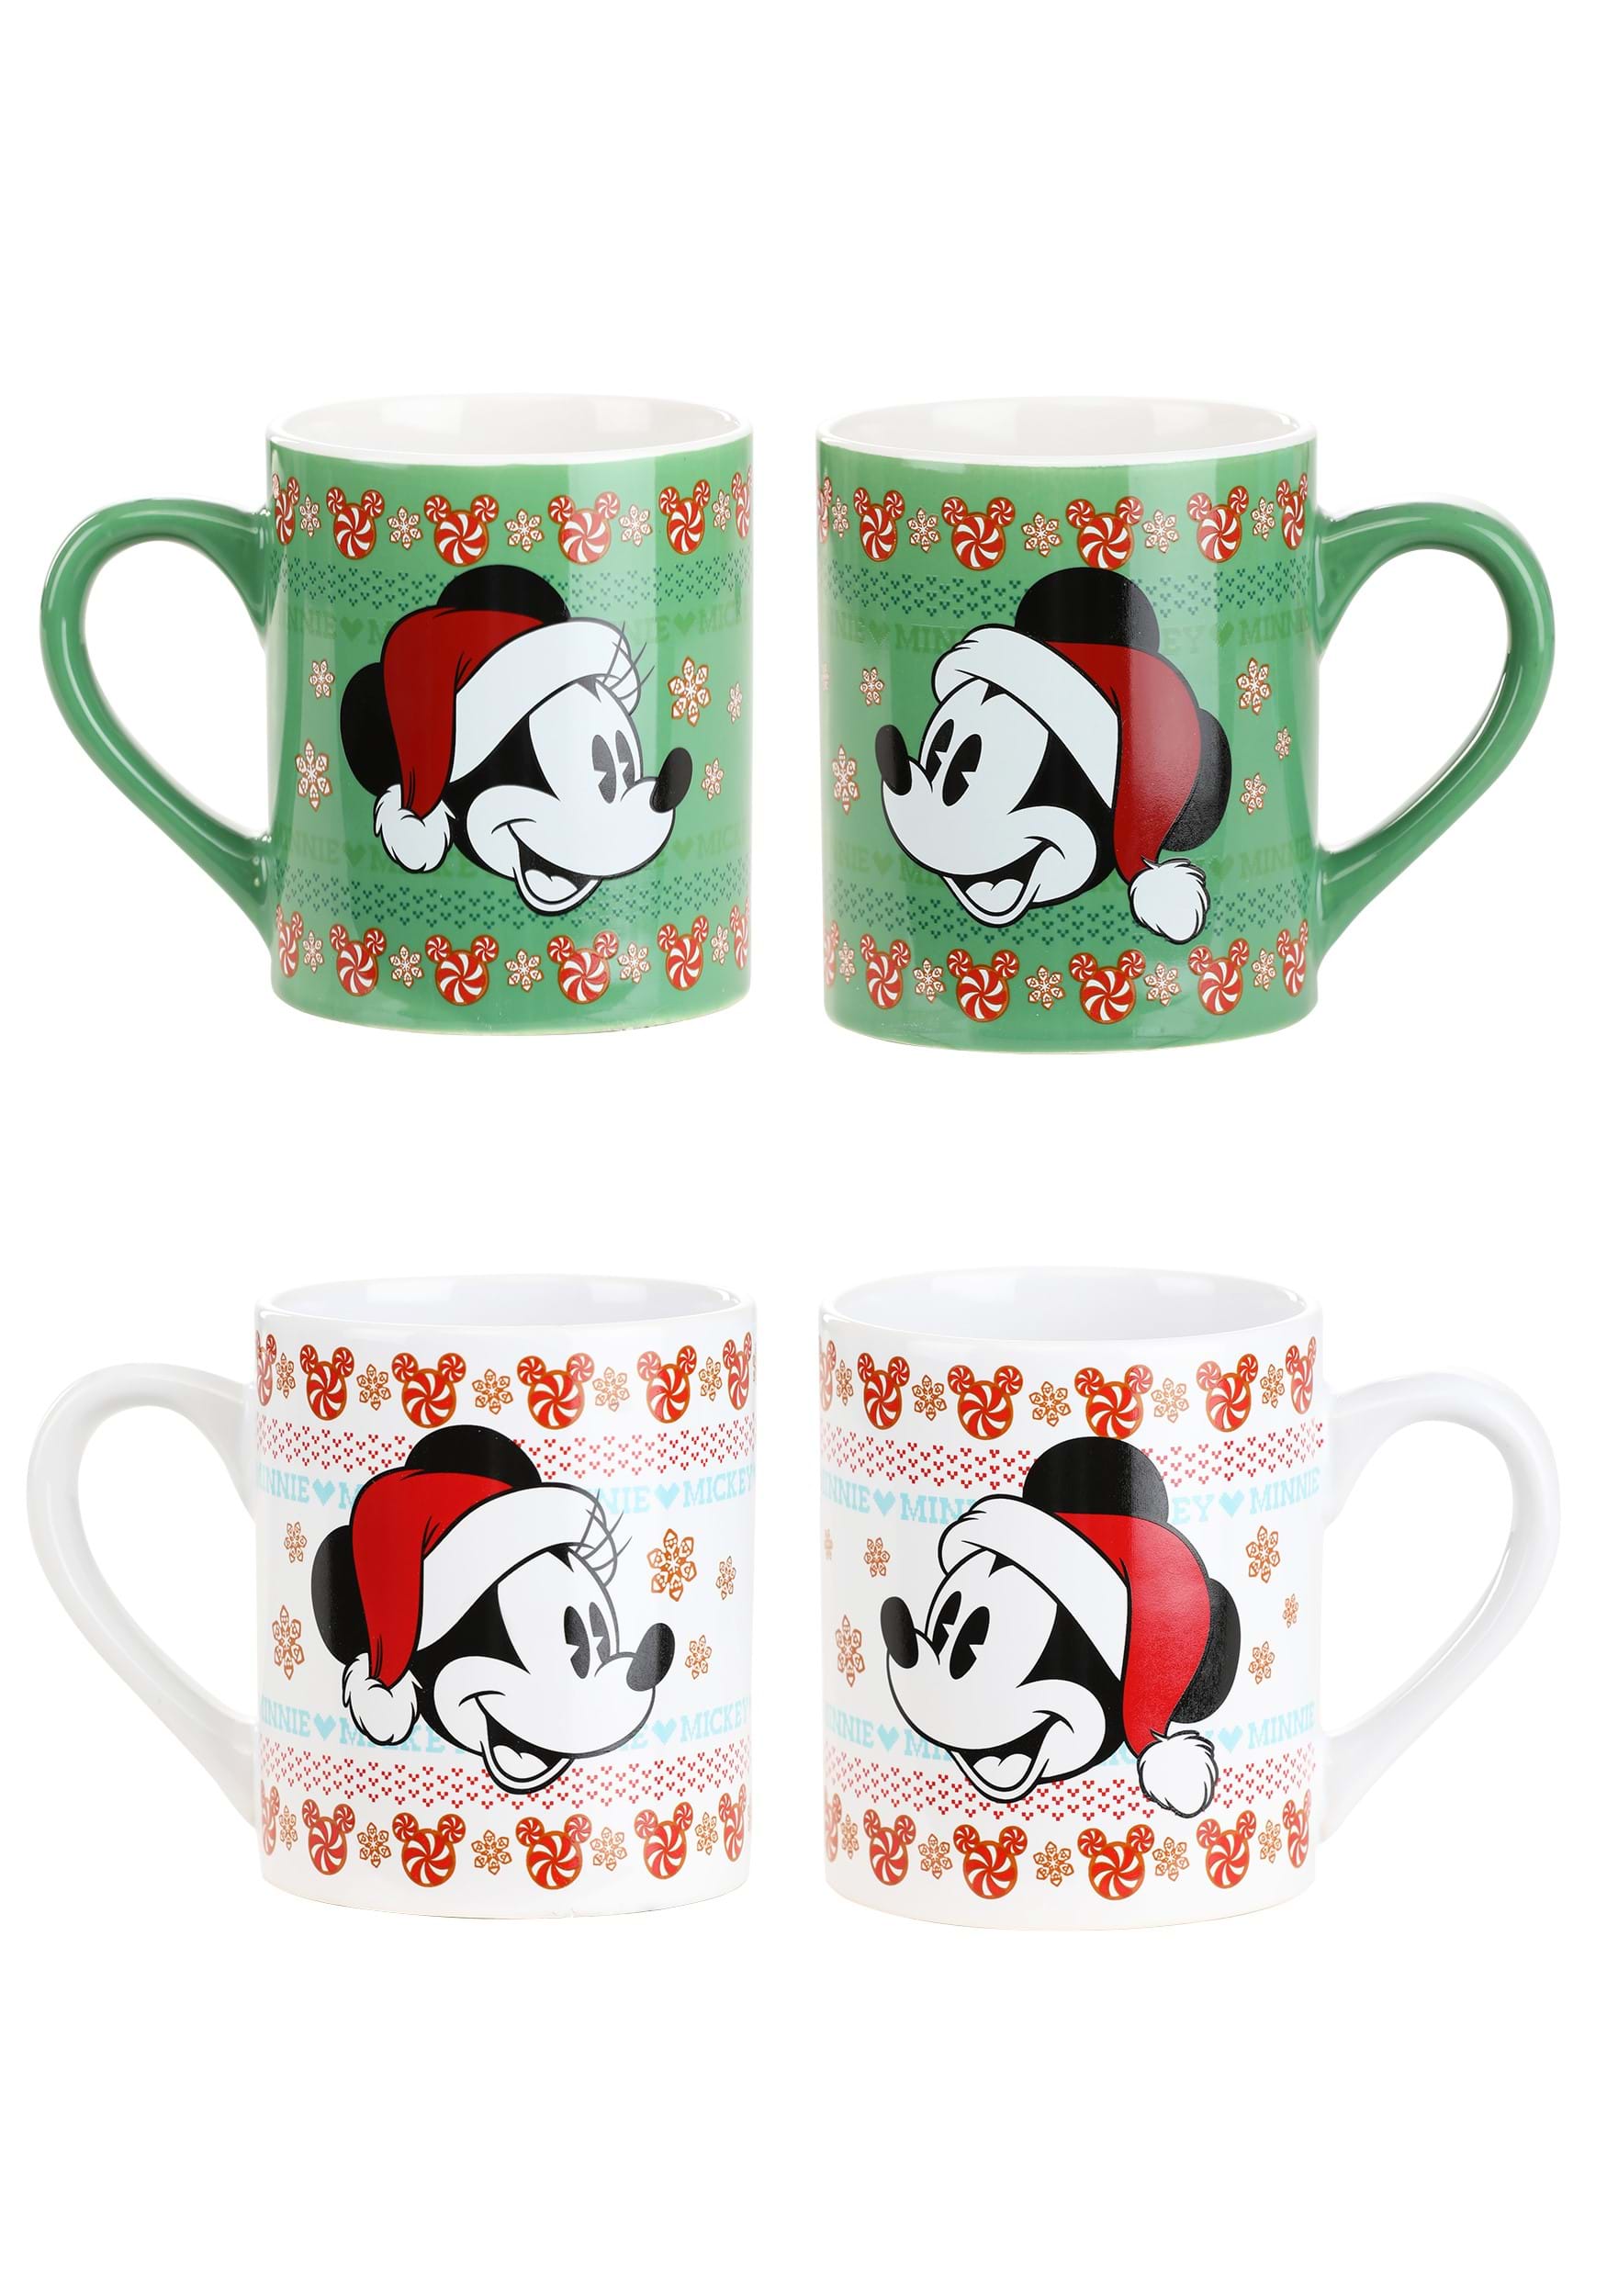 Disney Christmas 14oz Ceramic Mug 2 Pack